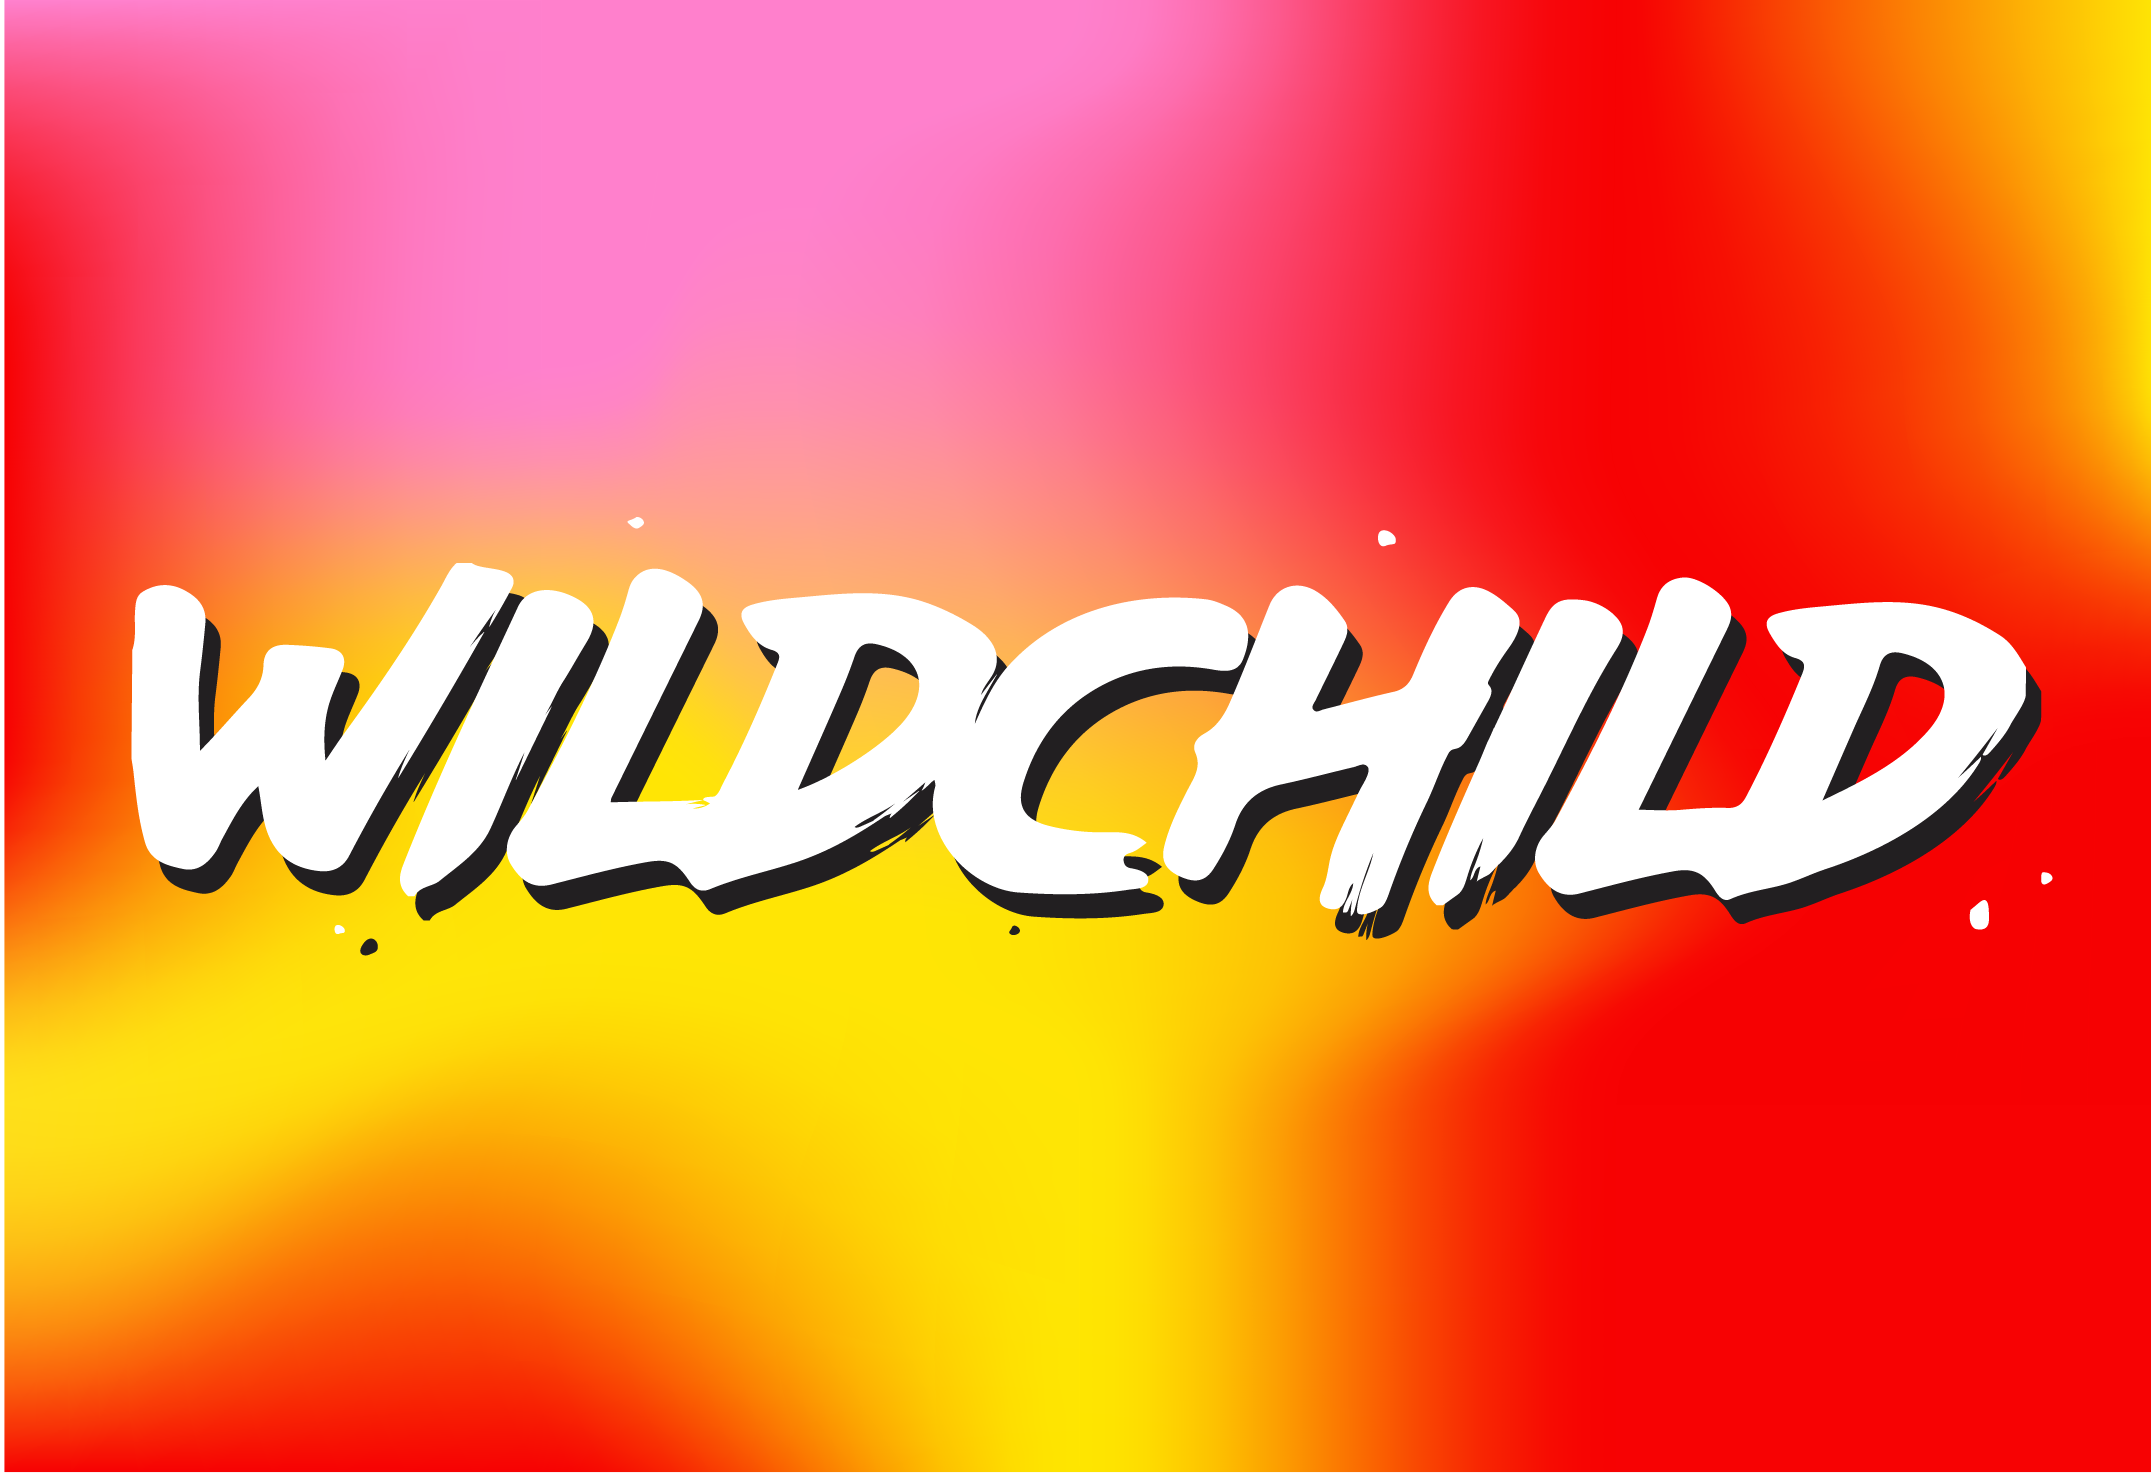 Wildchild Opening